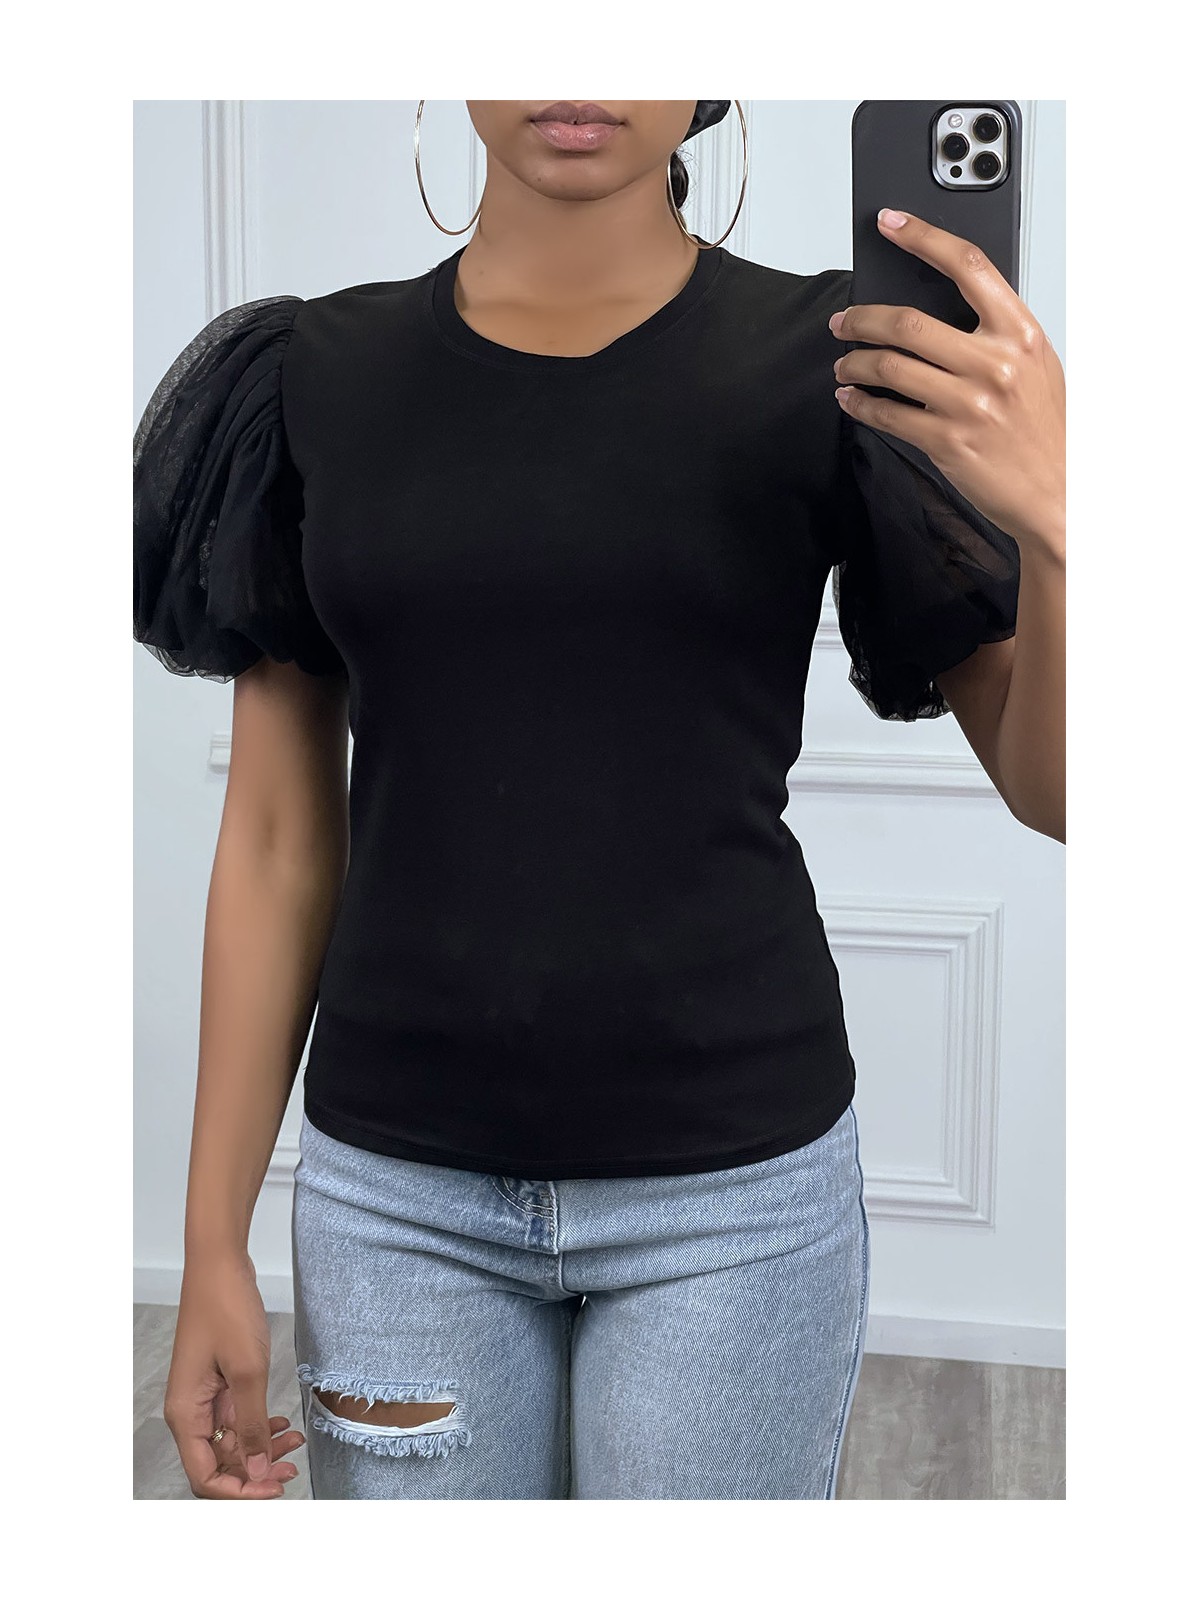 T-shirt noir à manches courtes bouffantes - 1